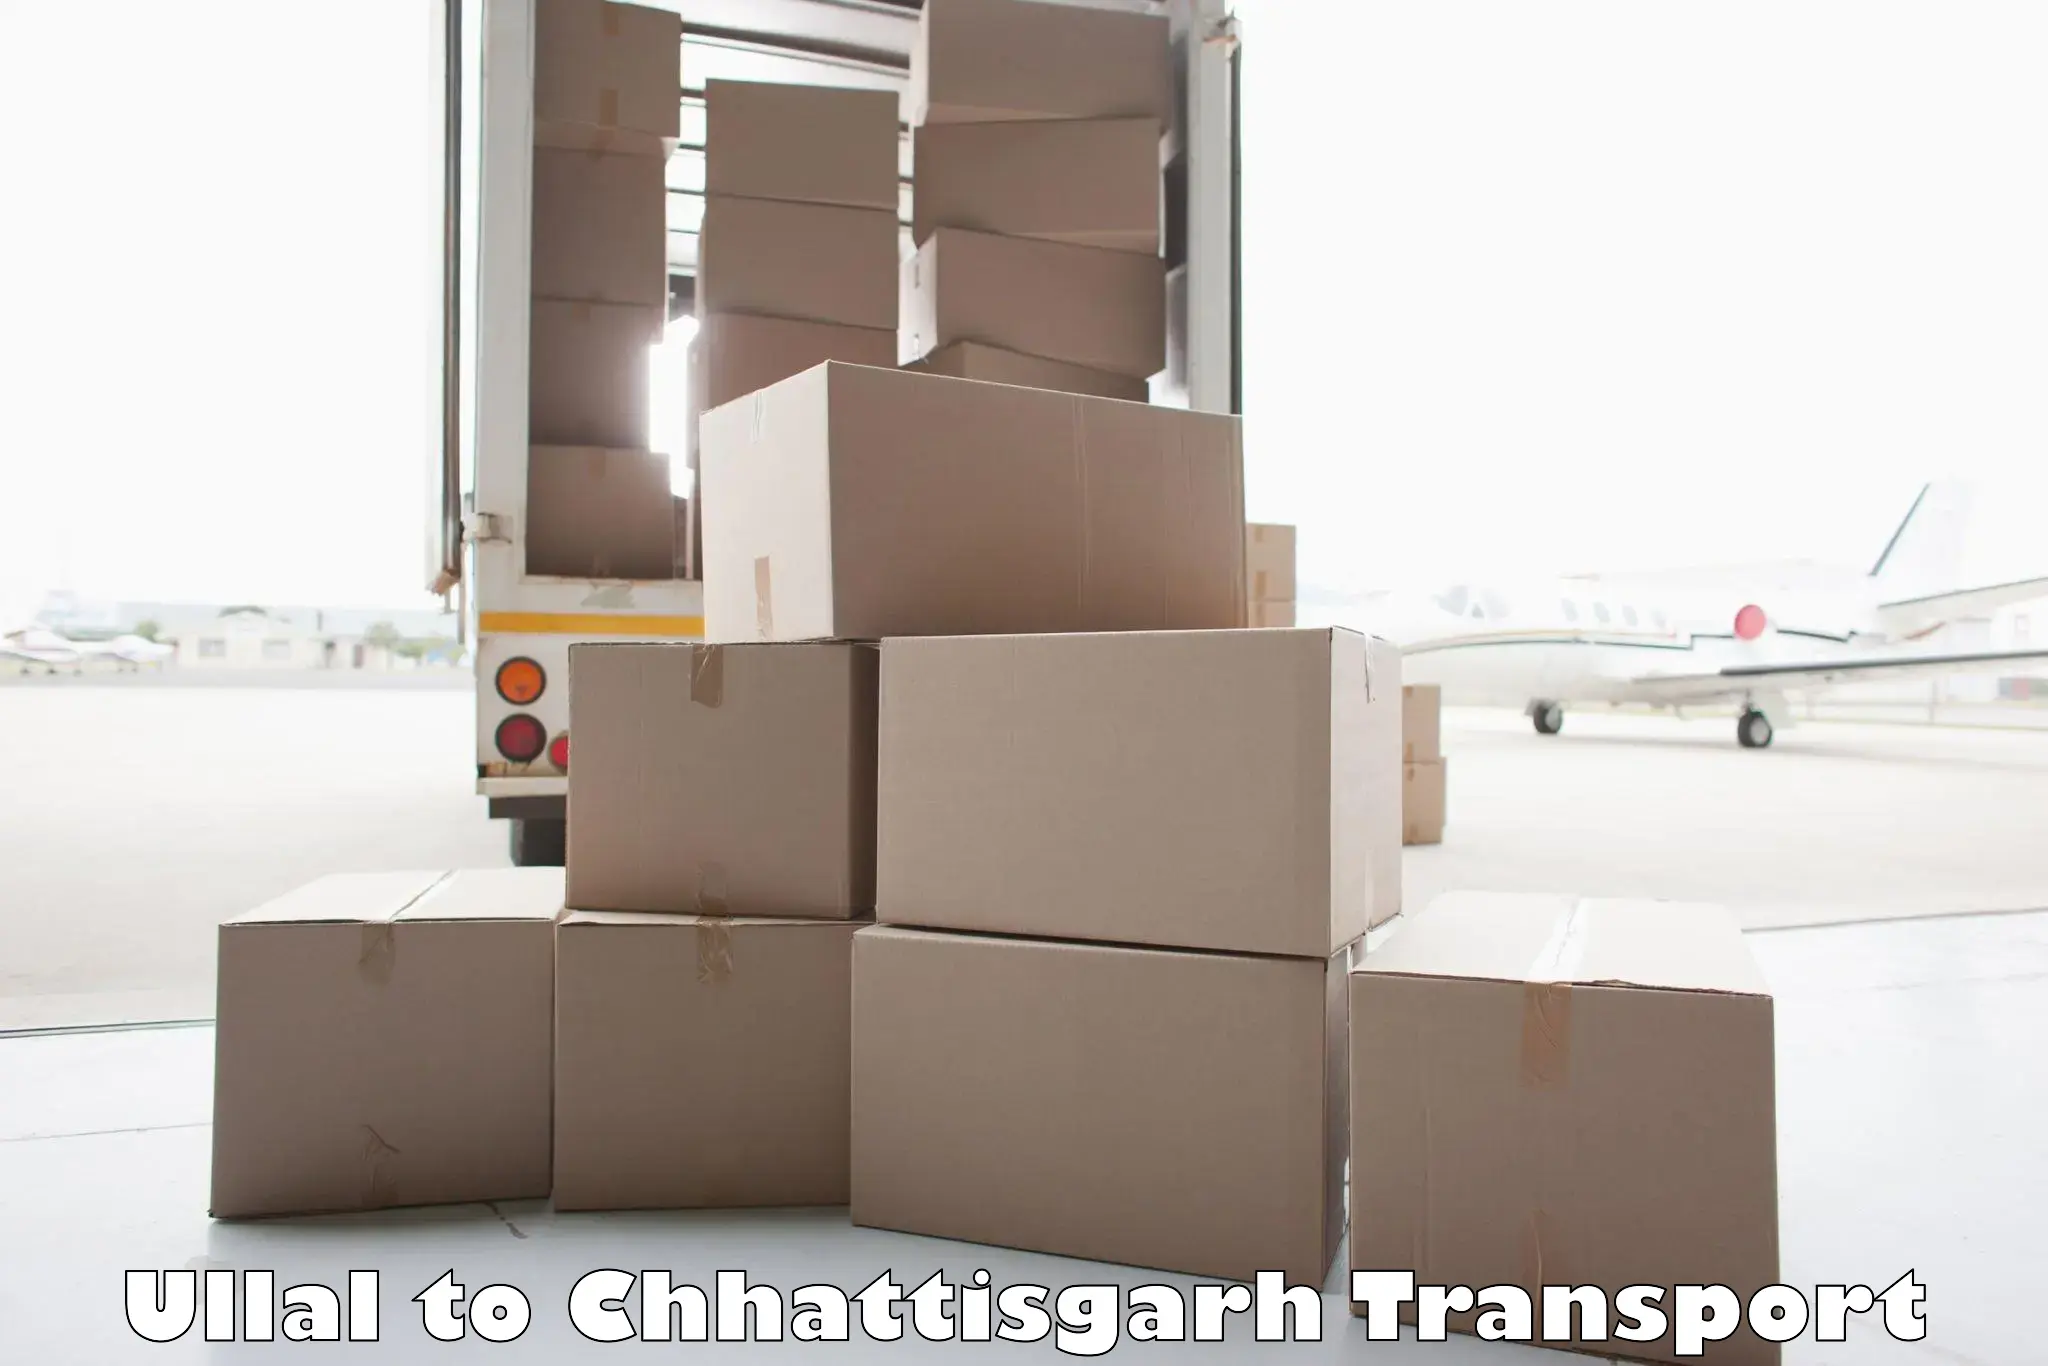 Cargo transportation services Ullal to Wadrafnagar